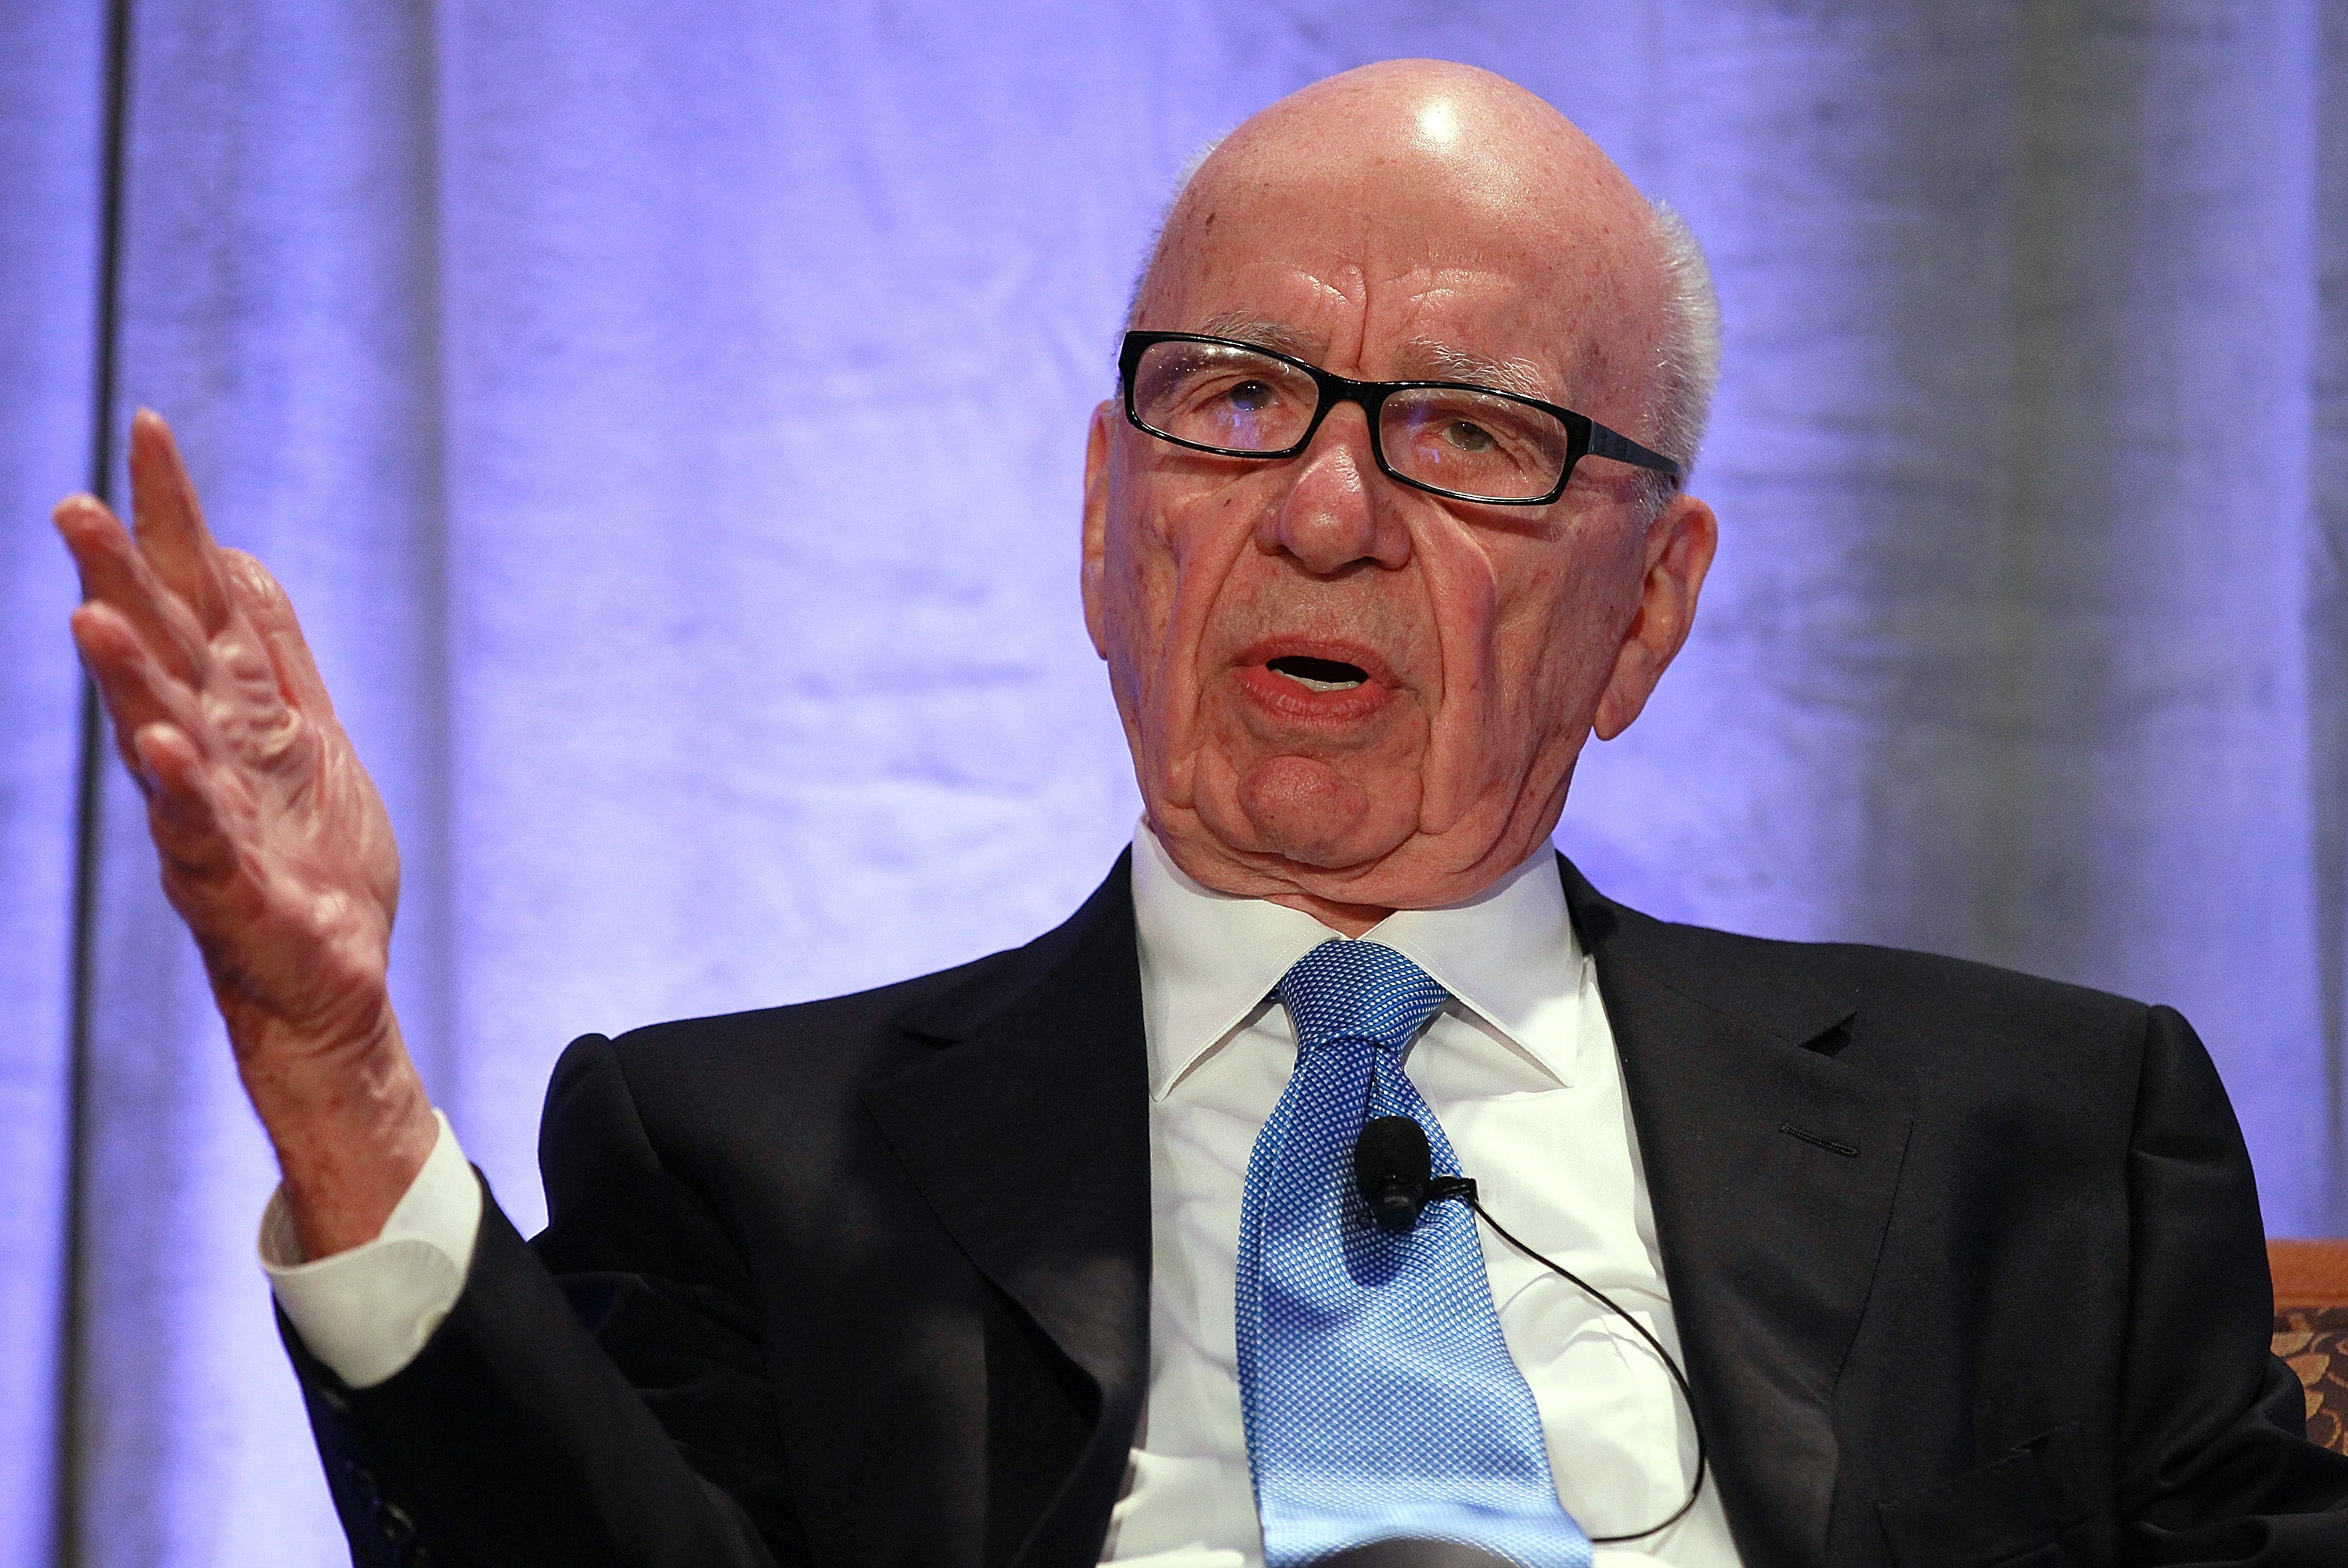 Rupert Murdoch was also announced as an awardee